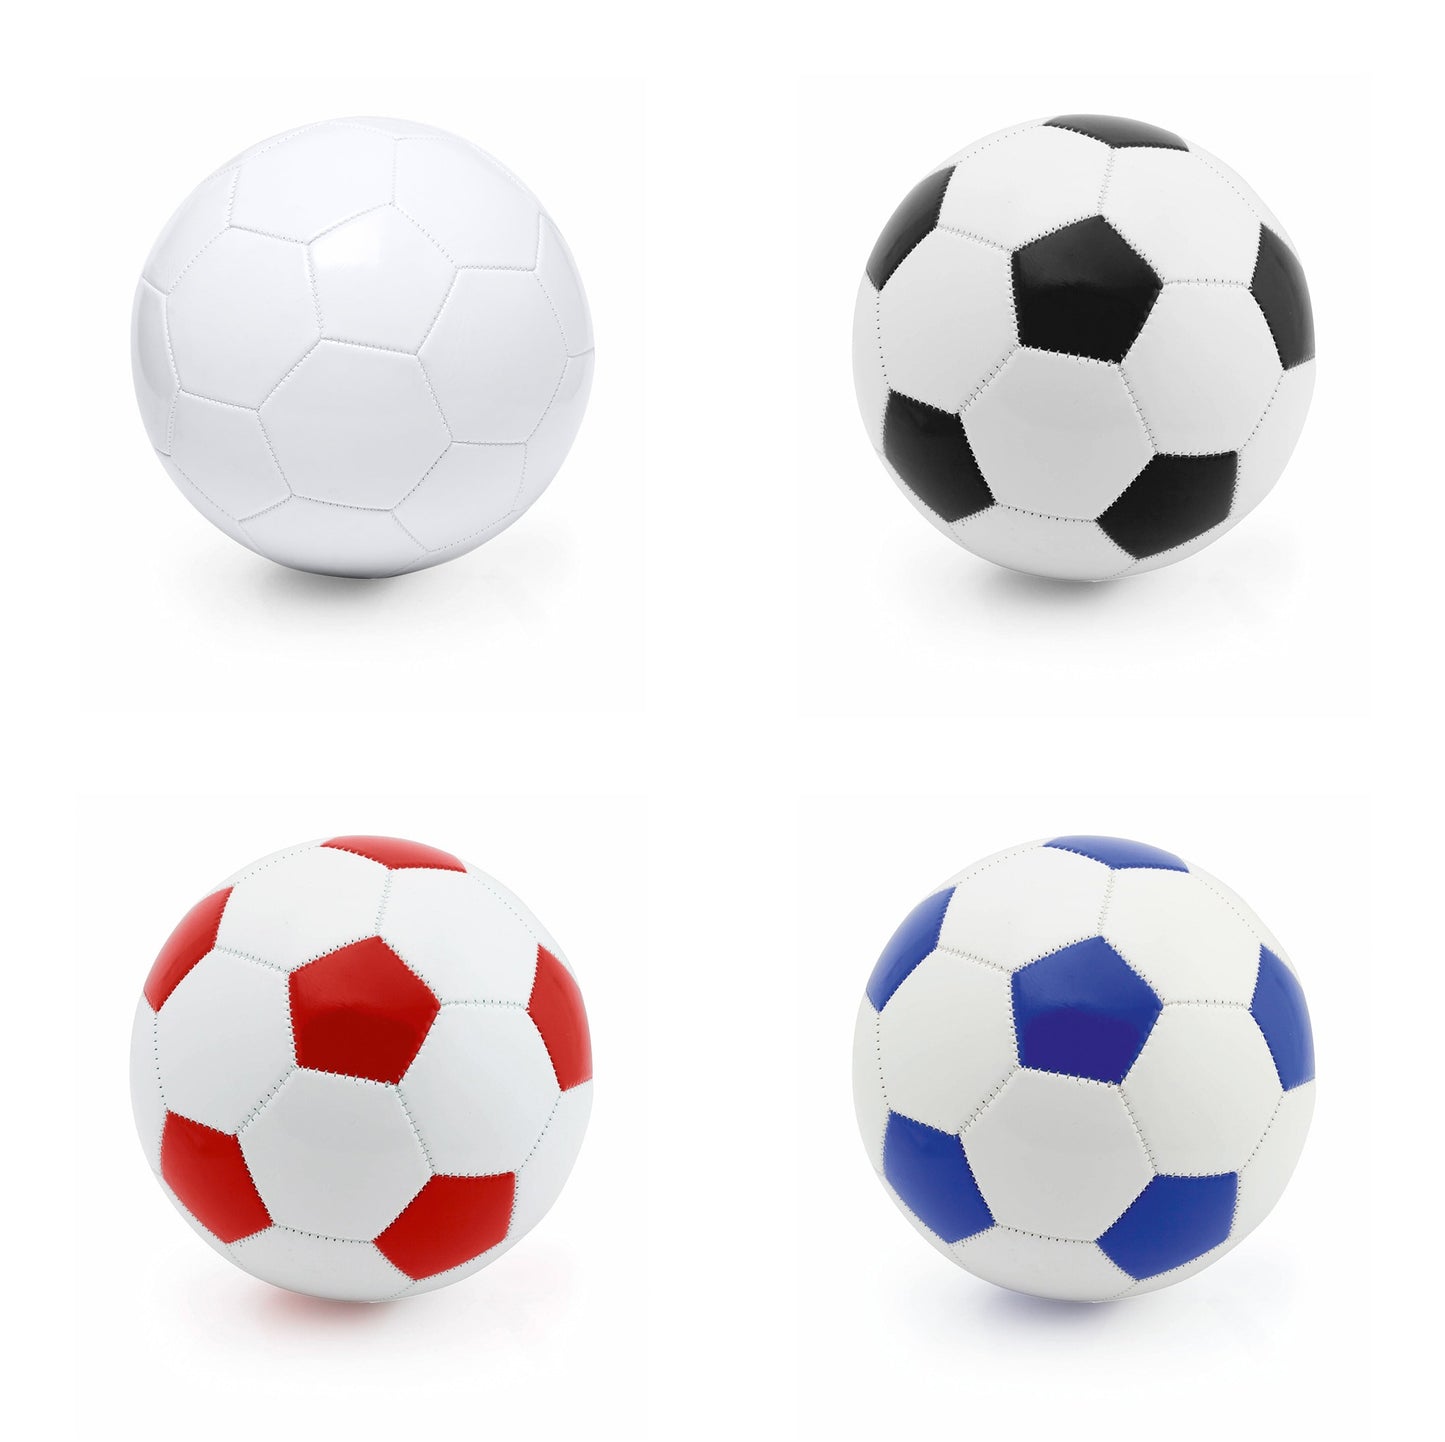 Ballon de football taille 5 design rétro, panneaux blancs et pentagonaux colorés en similicuir